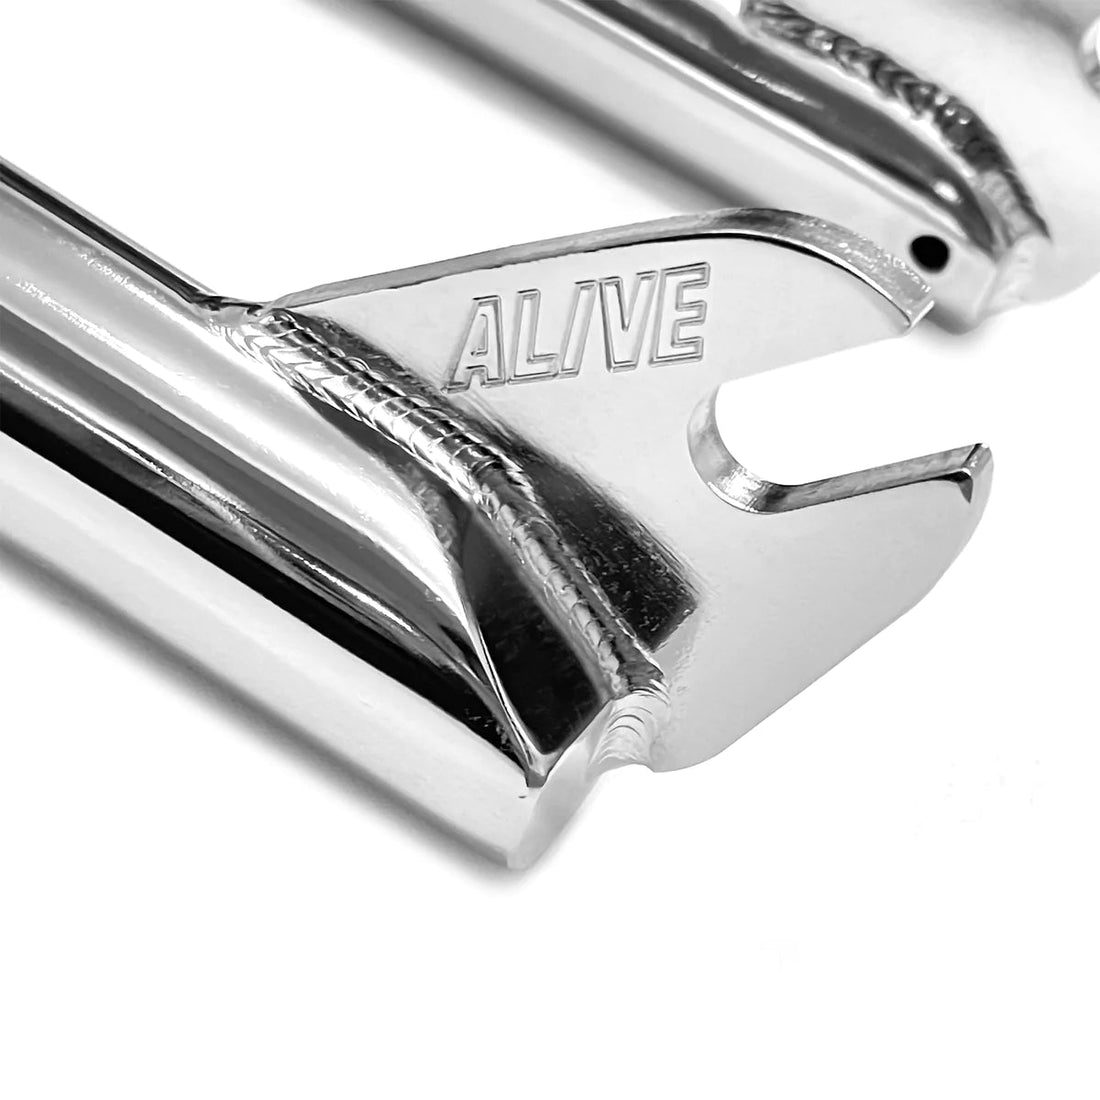 Alive Brave Fork - 28mm Offset